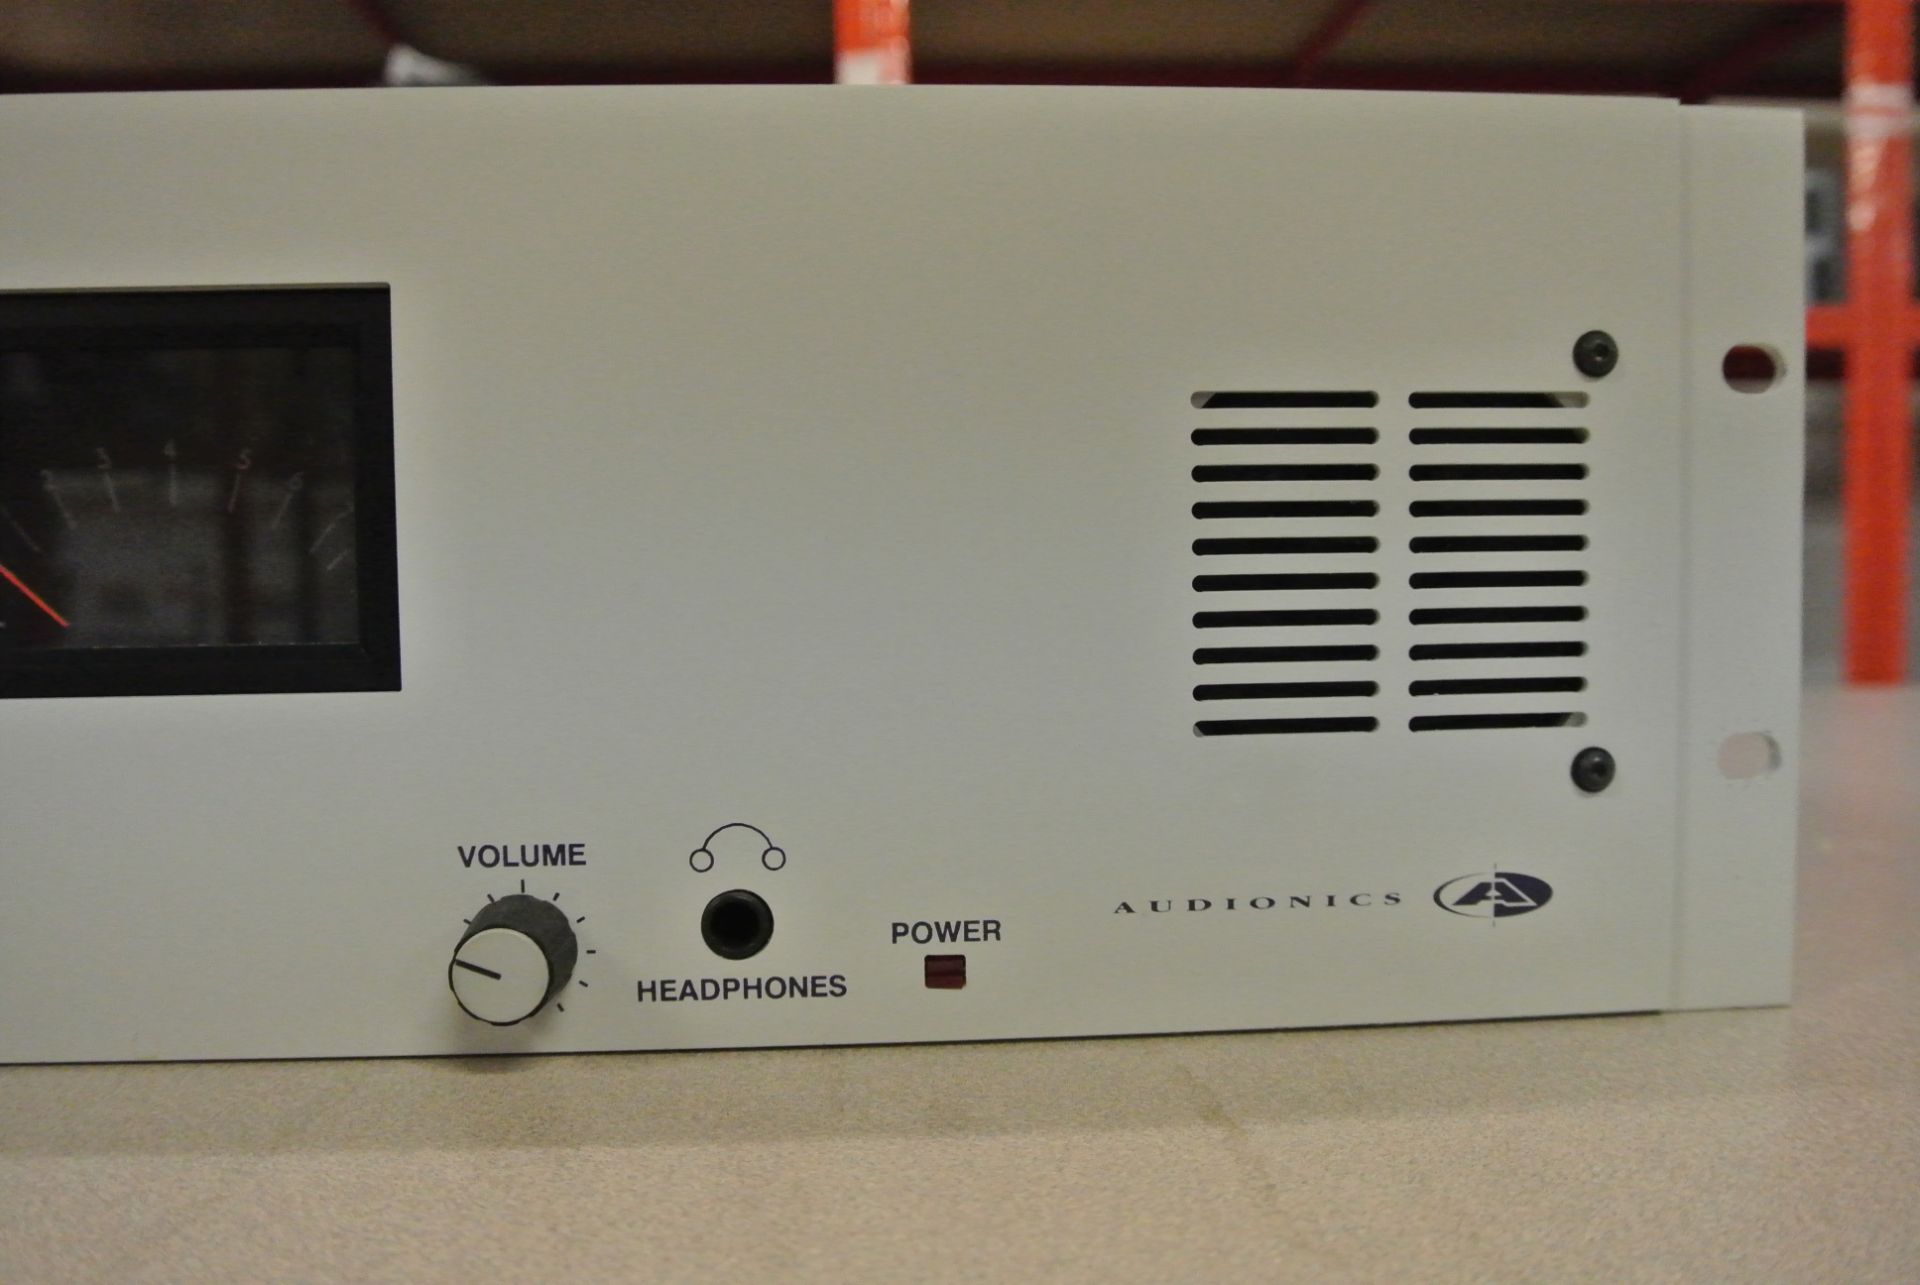 AUDIONICS SC1-D Digital Audio Monitoring Unit - 2U 19' Rack Mount - Image 2 of 6